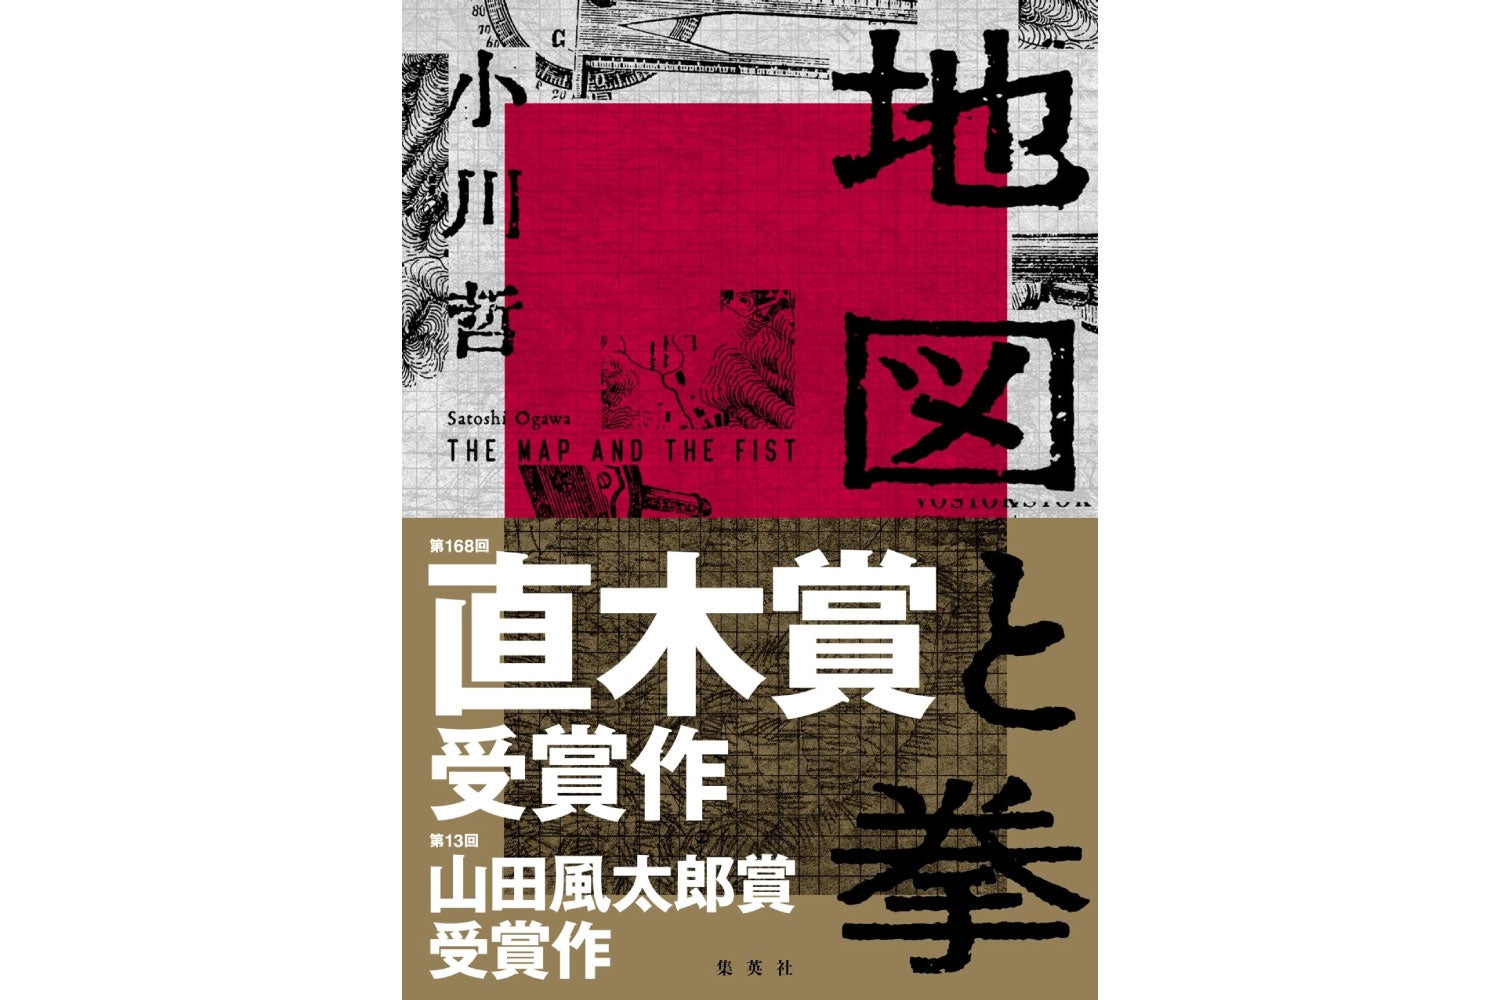 直木賞を受賞した作家・小川哲さんが語る「地図と拳」秘話 特別番組 